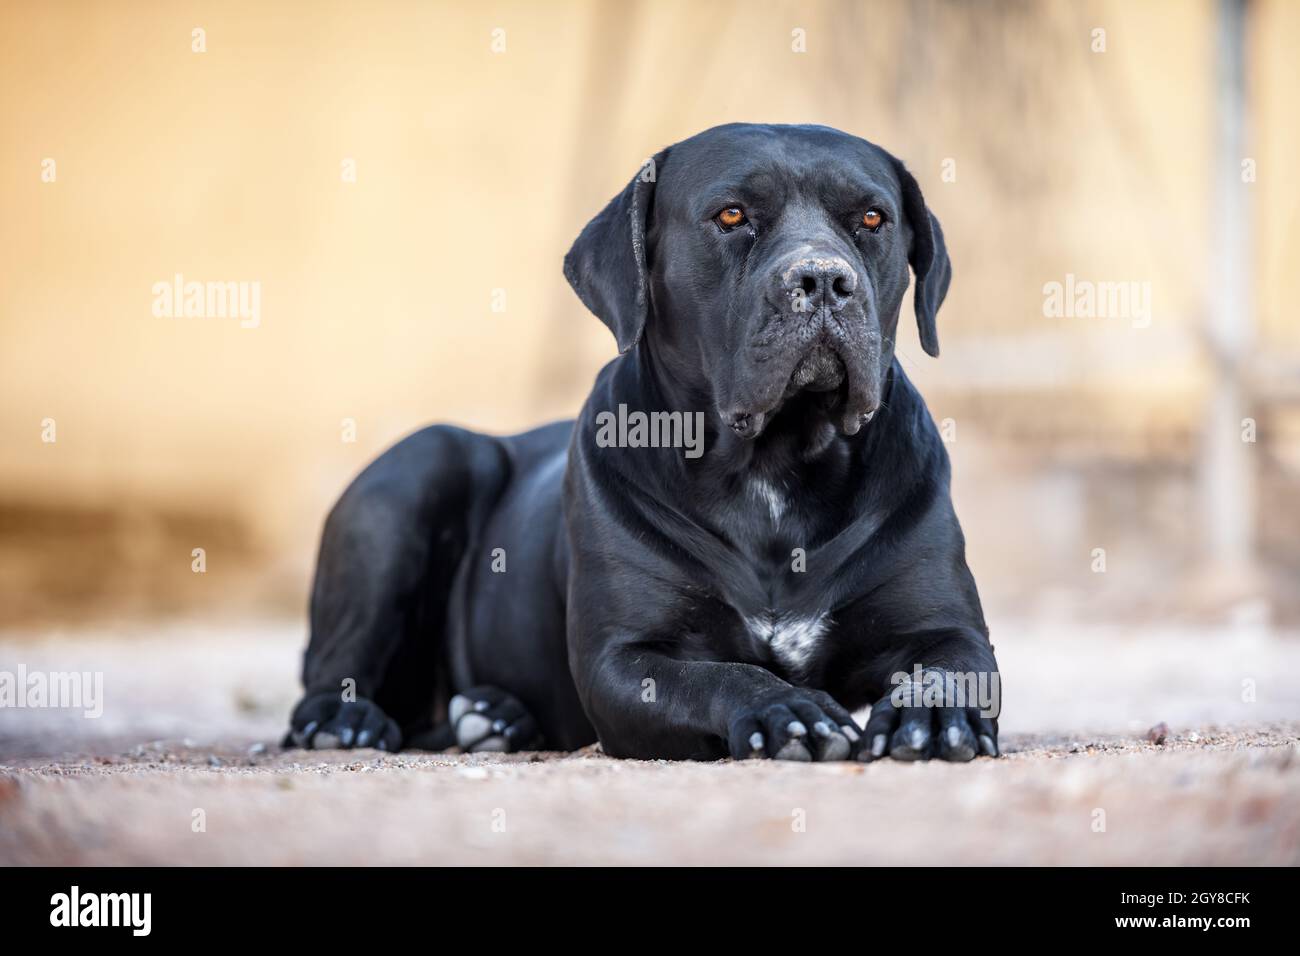 Die schwarze Hunderasse Cane Corso liegt auf dem Boden. Tierfotografie Stockfoto